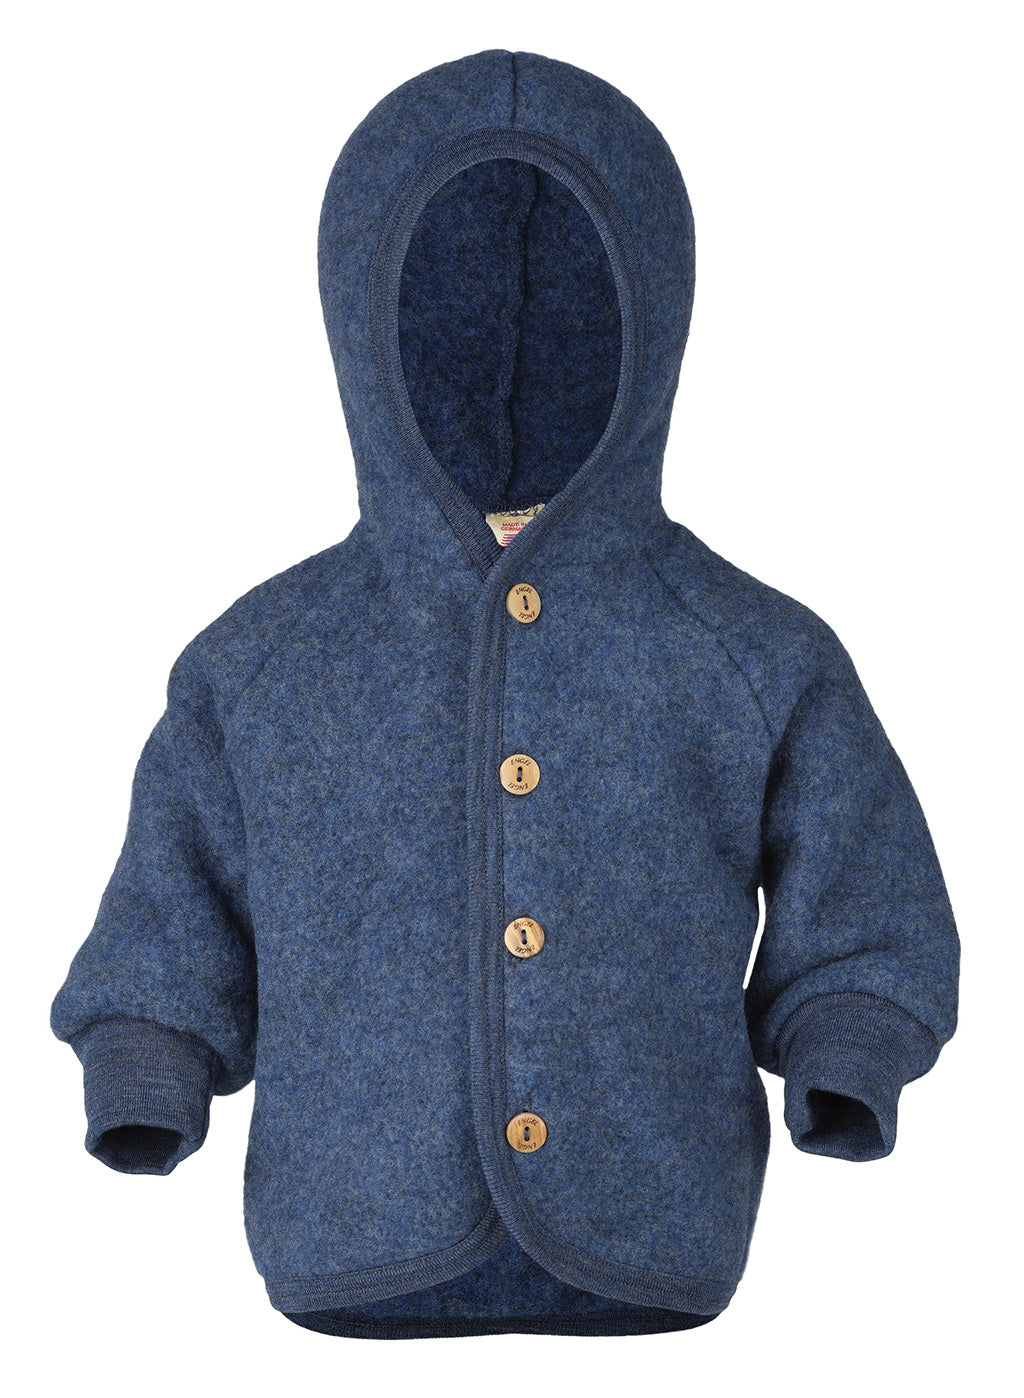 Engel hooded wool fleece jacket in blue melange.